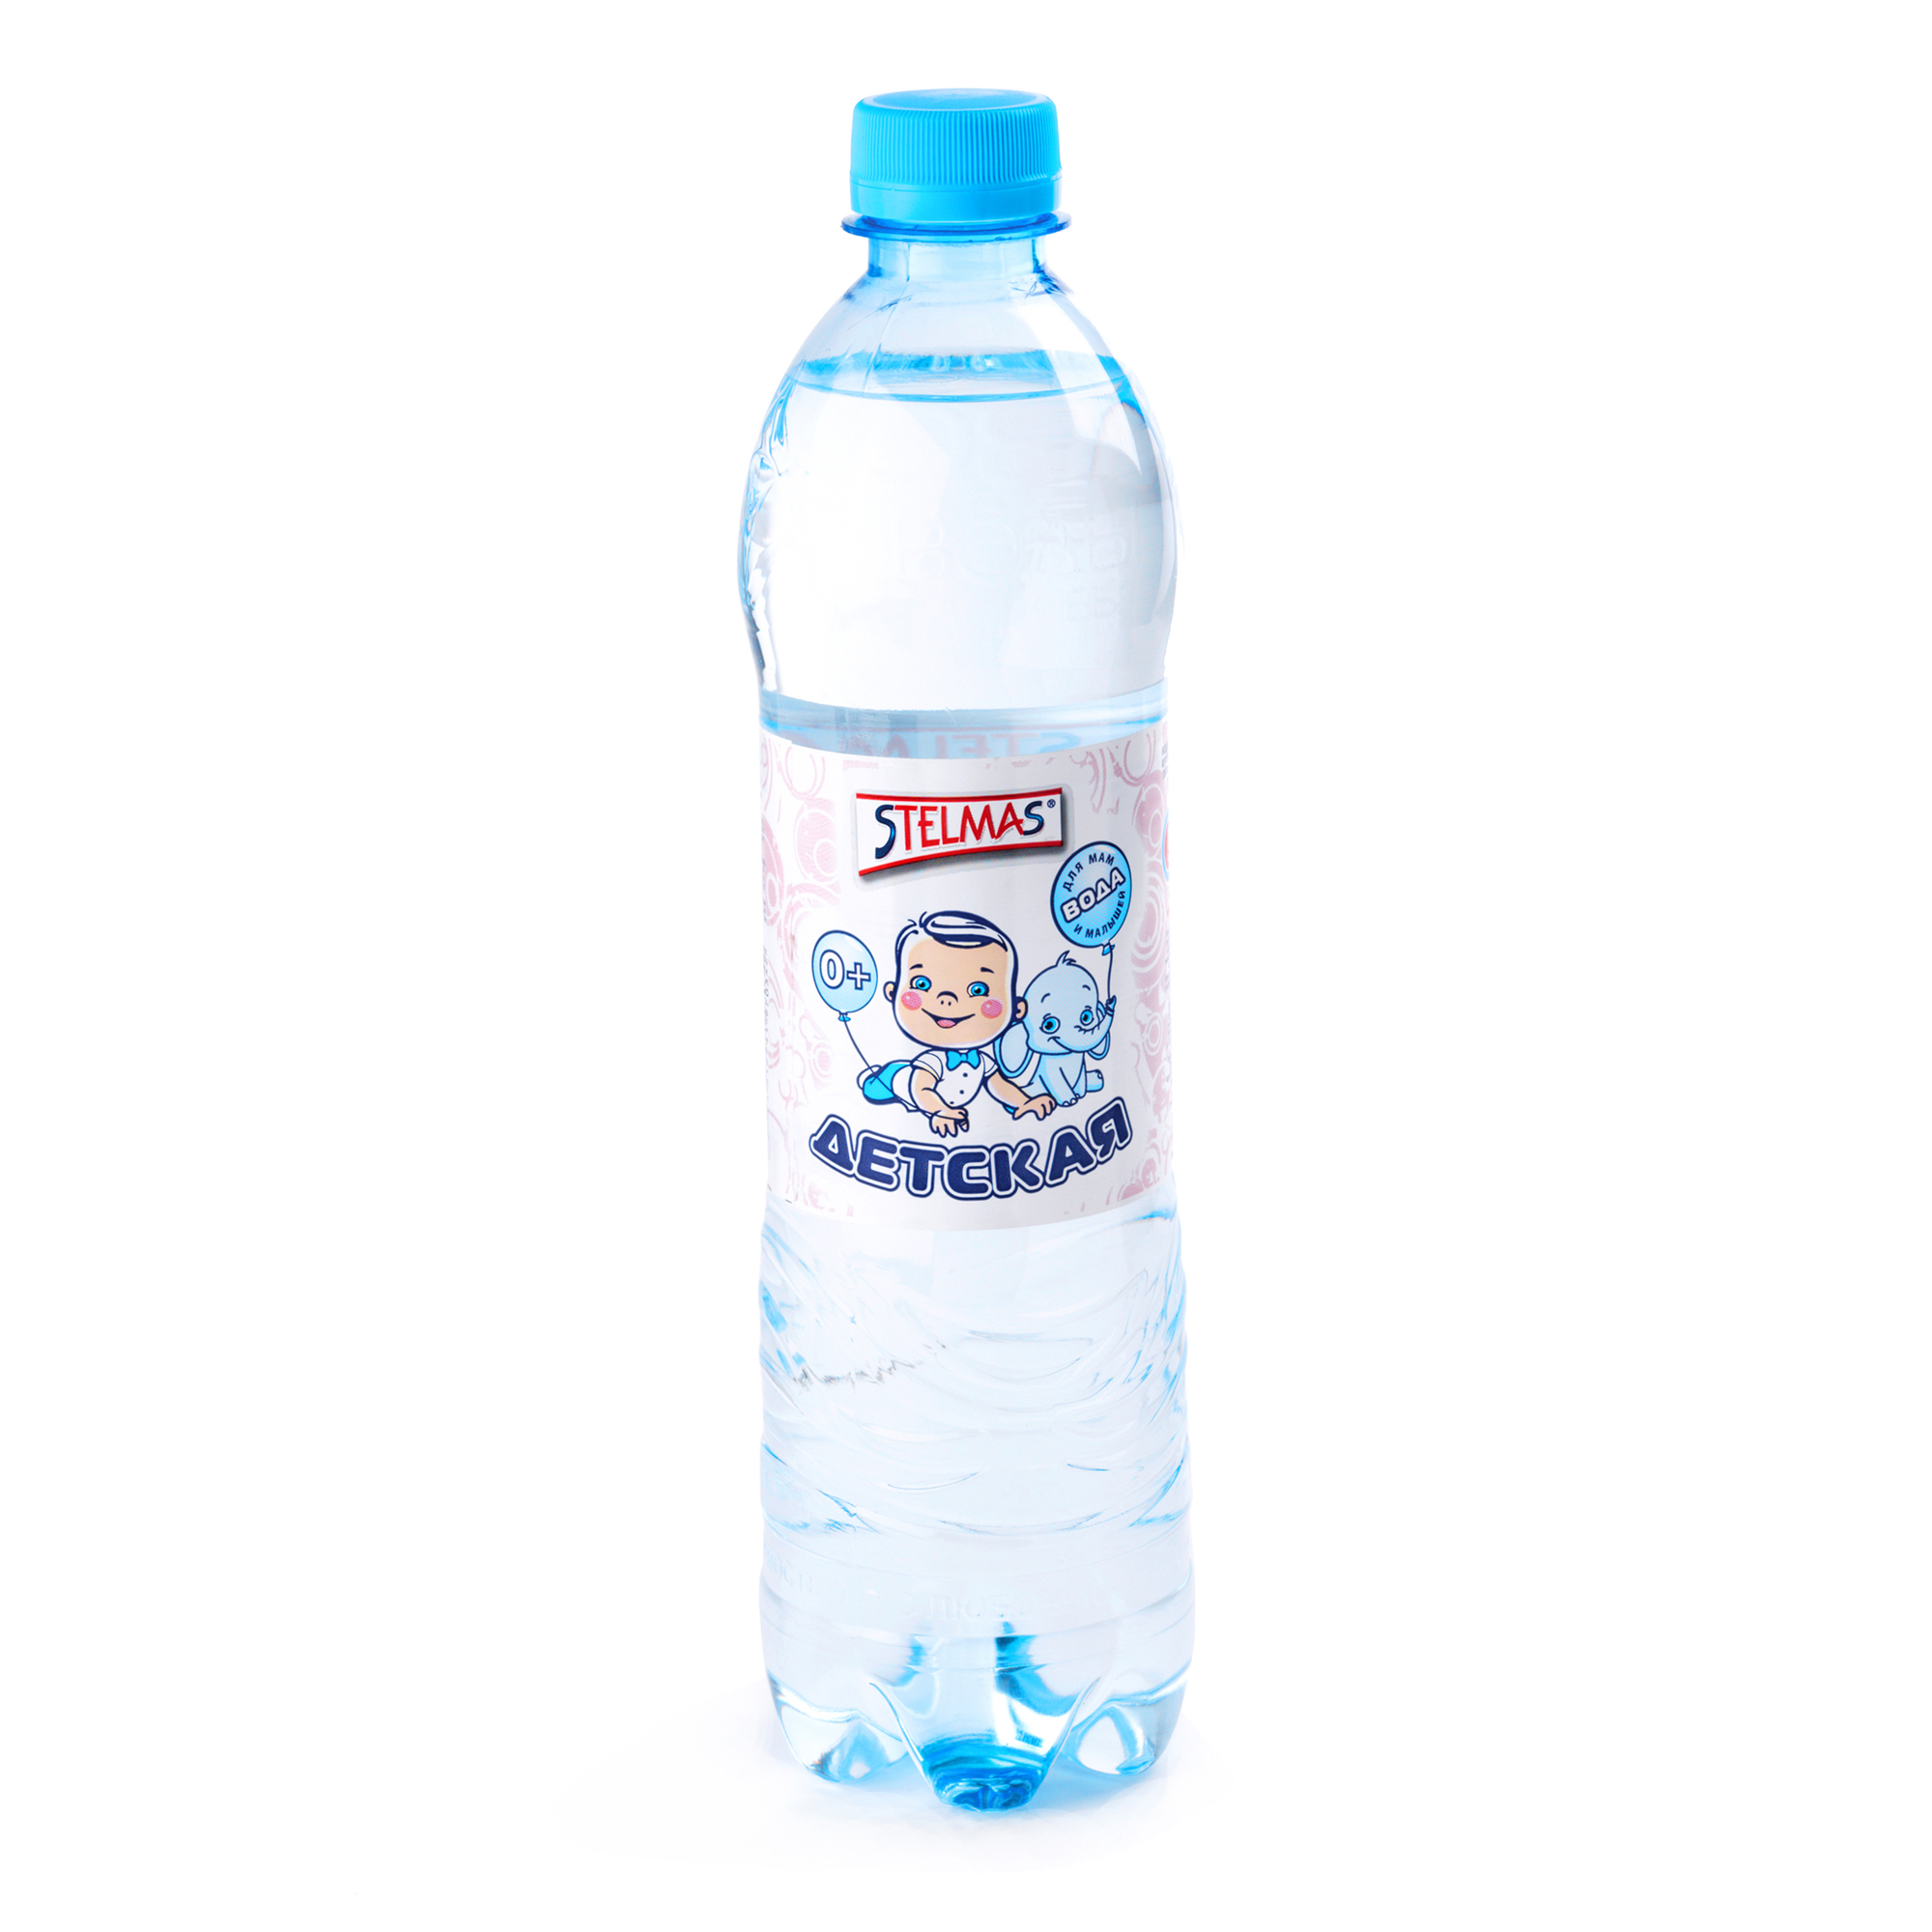 Вода питьевая 6 л. Стэлмас вода детская 0.6л. Вода Stelmas 1.5л. Вода детская Стэлмас воды здоровья 0,6л. Вода Стэлмас детская спорт питьевая негазированная, 0,6 л.